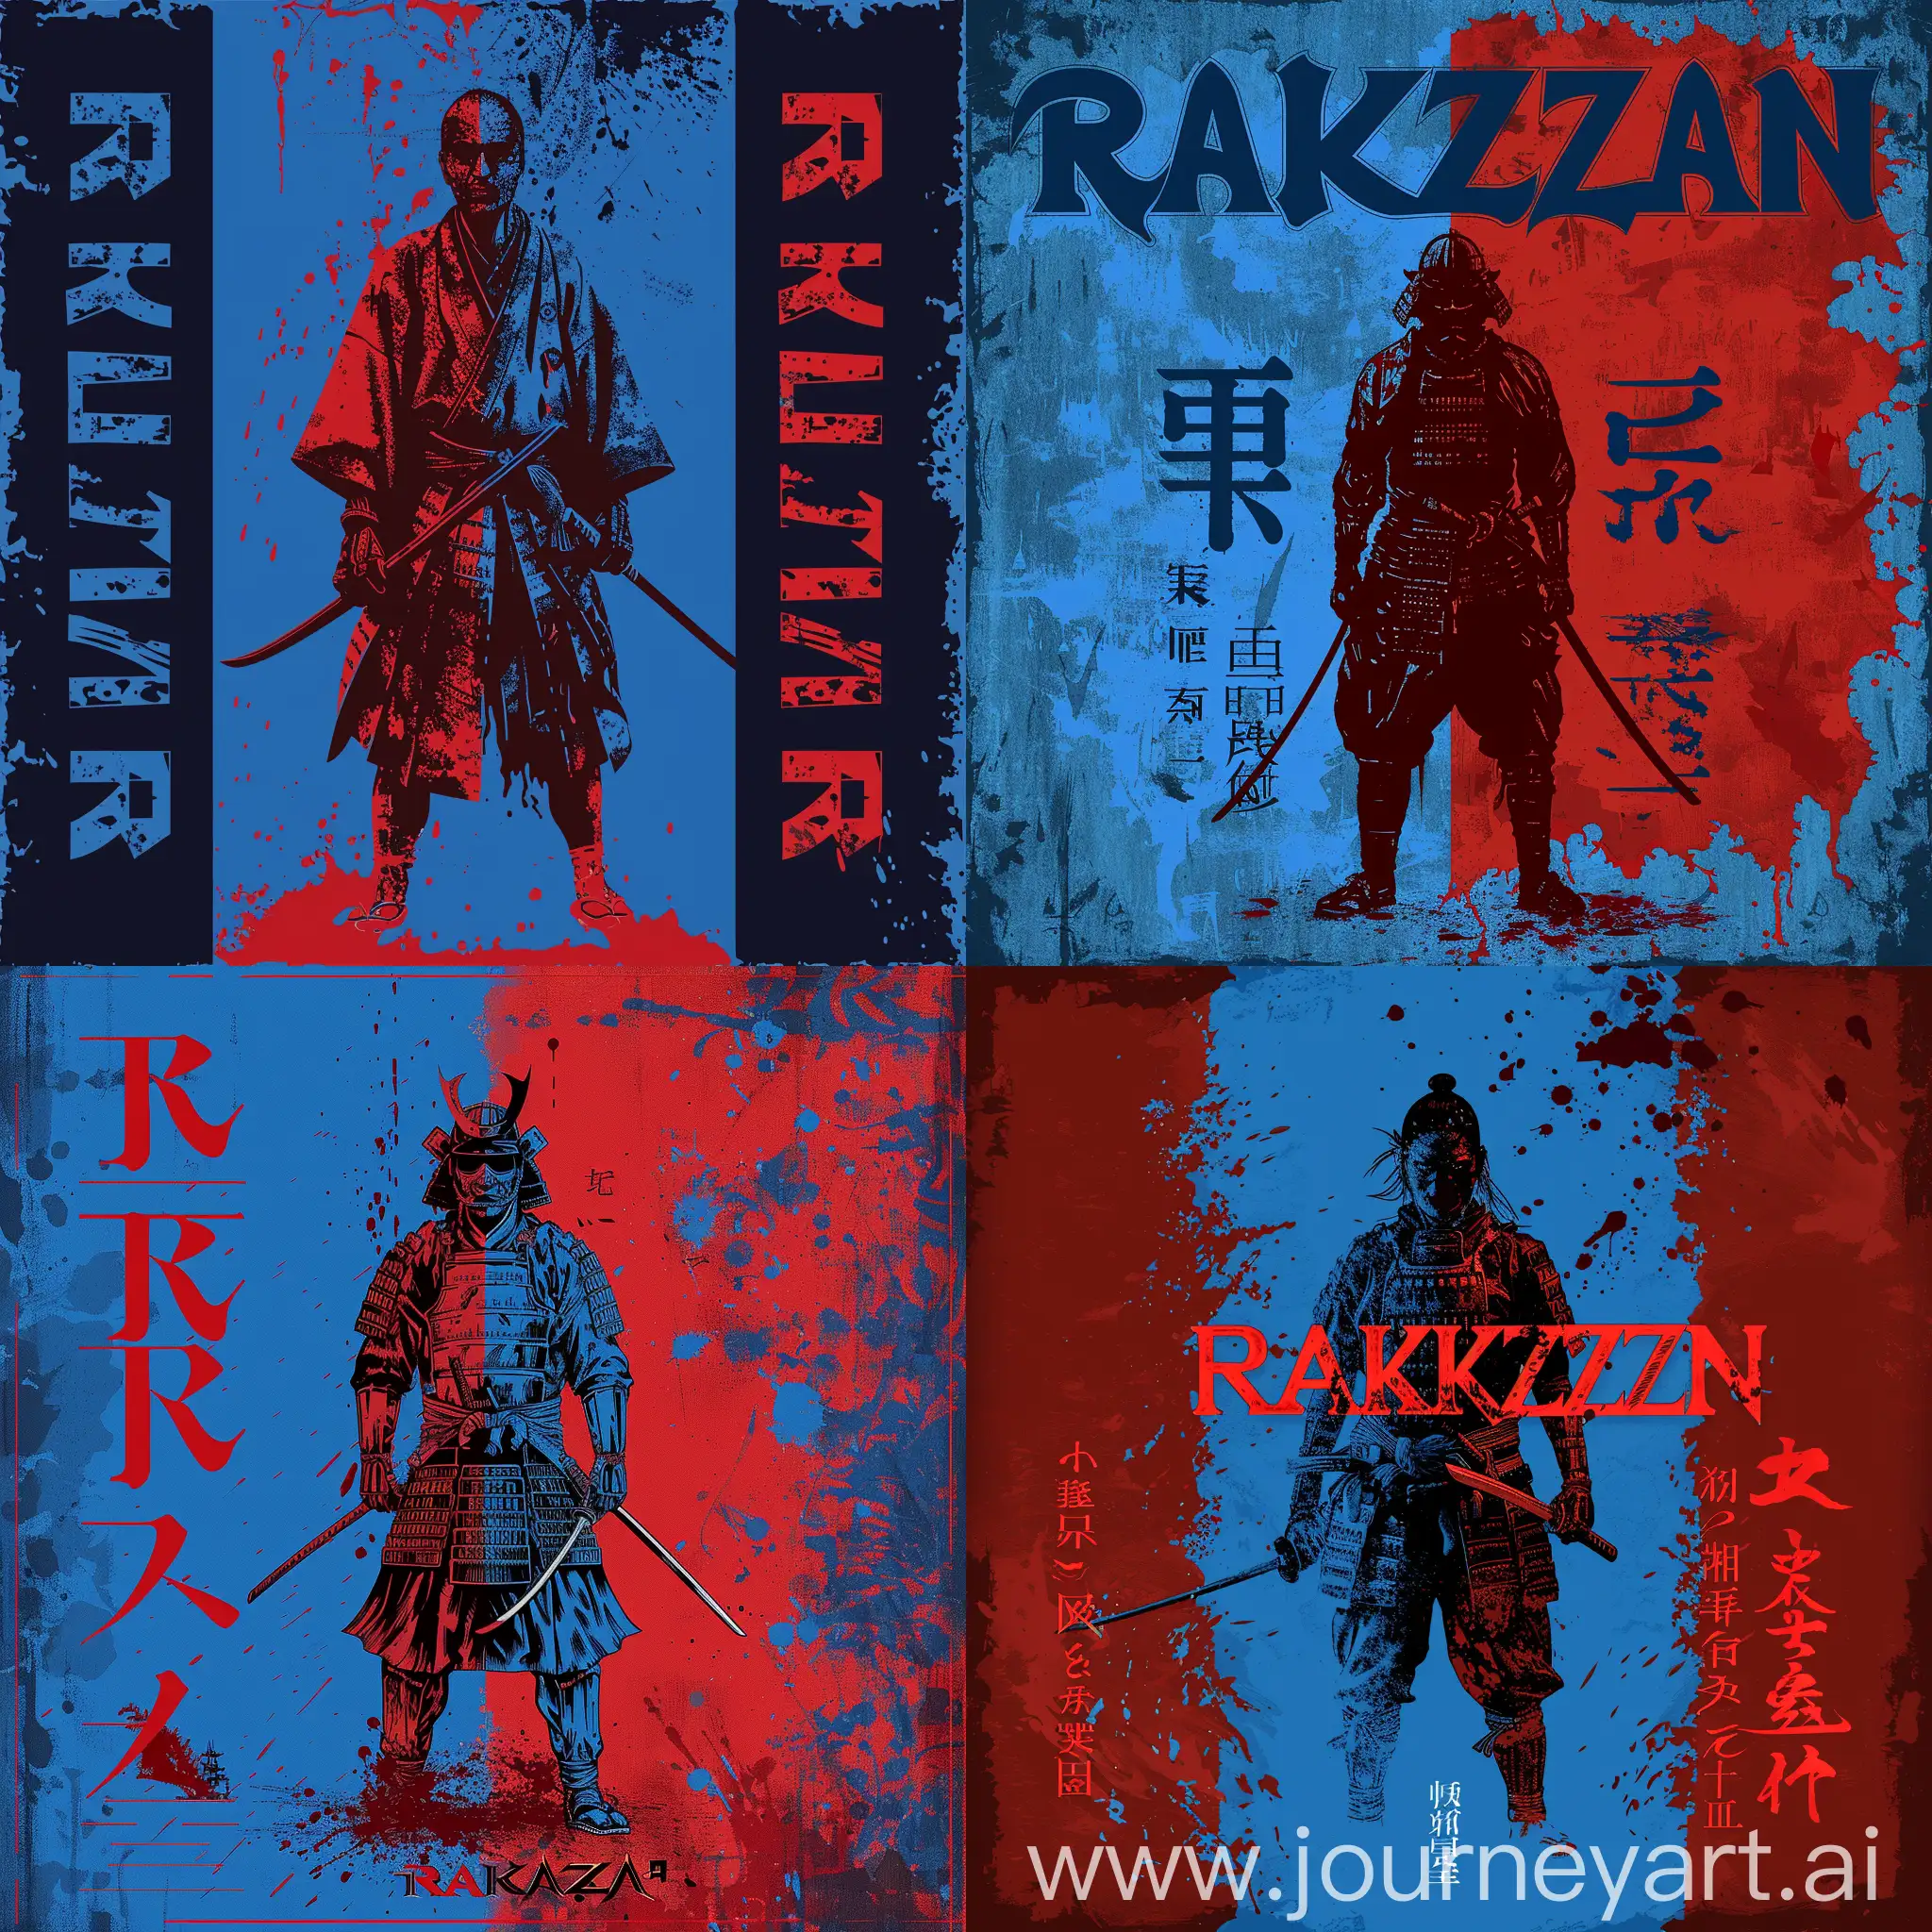 Eine Blau und Rot Hintergrund , Zentriert steht Rakuzan, dass text Rakuzan ist zweifärbig mit blau und rot, seblst Bild auch Links Blau rechts Rot, in der Mitte steht noch eine Samurai mit seine Katana vollig auf Blut